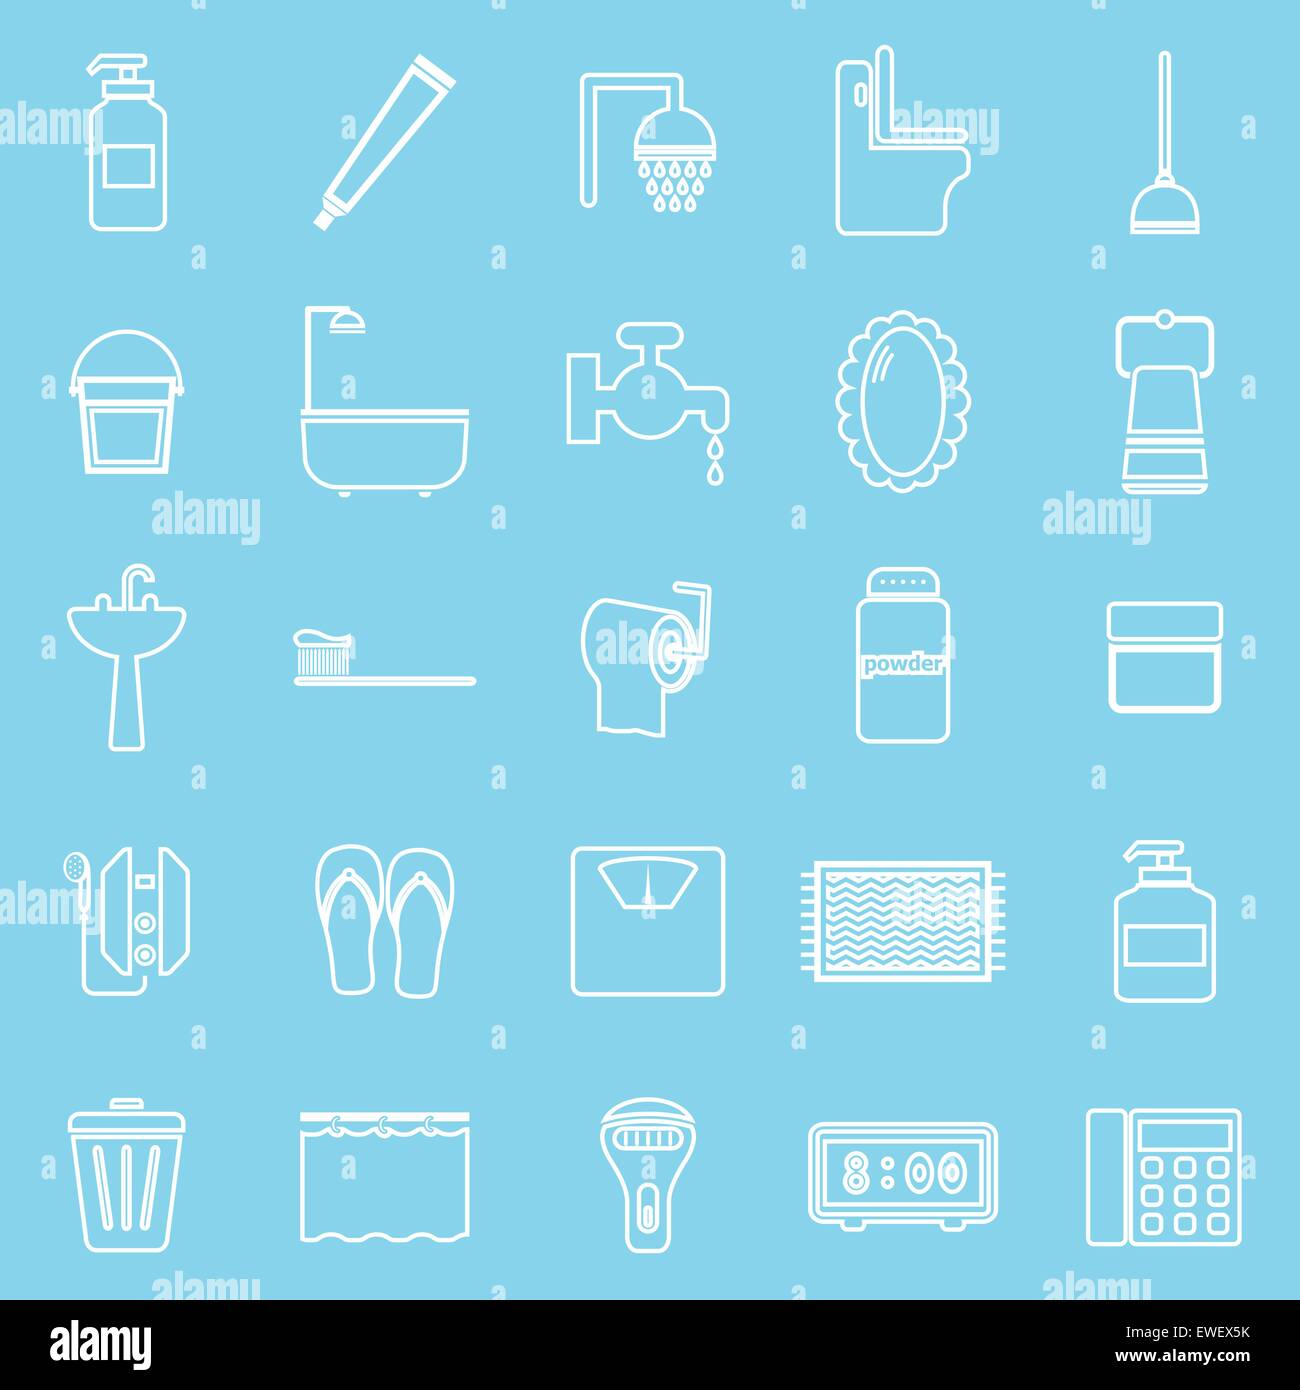 Ligne de bain icônes sur fond bleu clair, stock vector Illustration de Vecteur